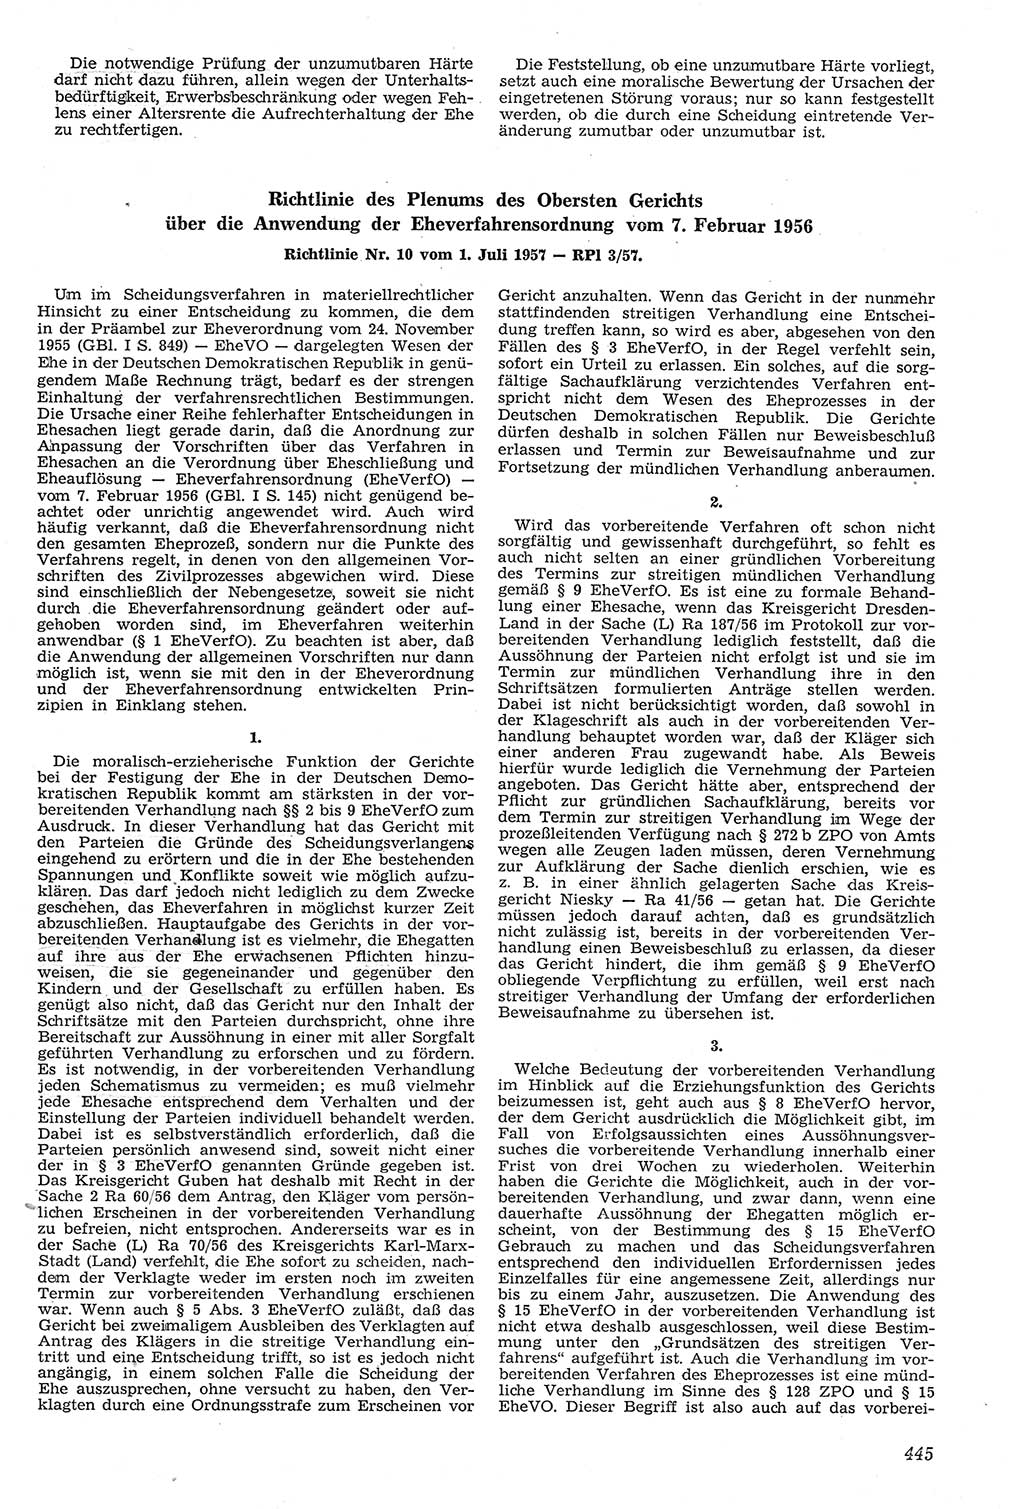 Neue Justiz (NJ), Zeitschrift für Recht und Rechtswissenschaft [Deutsche Demokratische Republik (DDR)], 11. Jahrgang 1957, Seite 445 (NJ DDR 1957, S. 445)